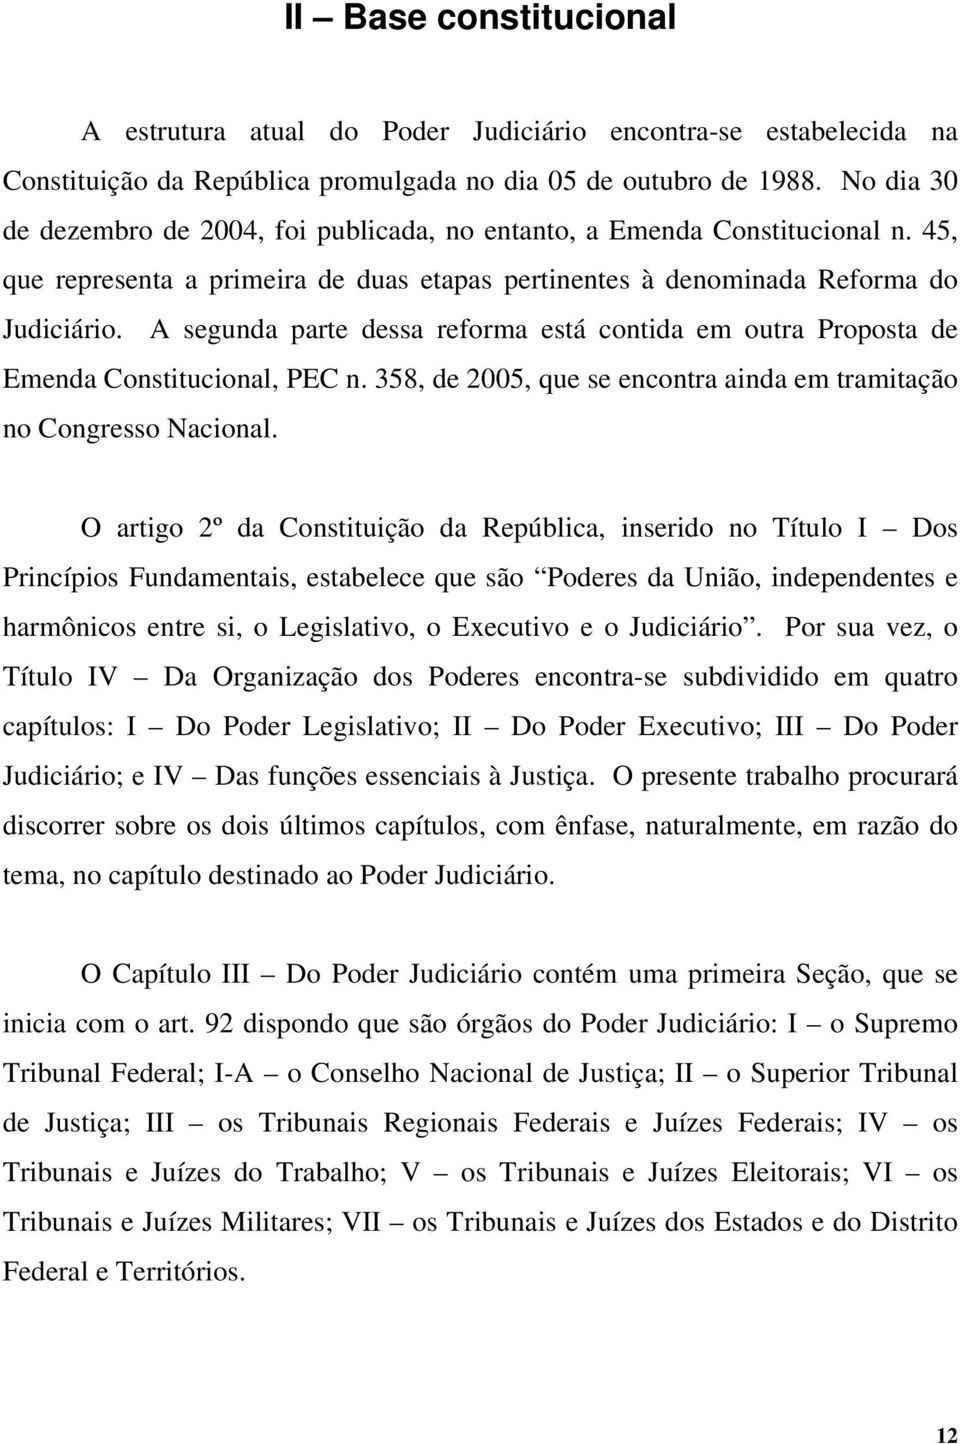 A segunda parte dessa reforma está contida em outra Proposta de Emenda Constitucional, PEC n. 358, de 2005, que se encontra ainda em tramitação no Congresso Nacional.